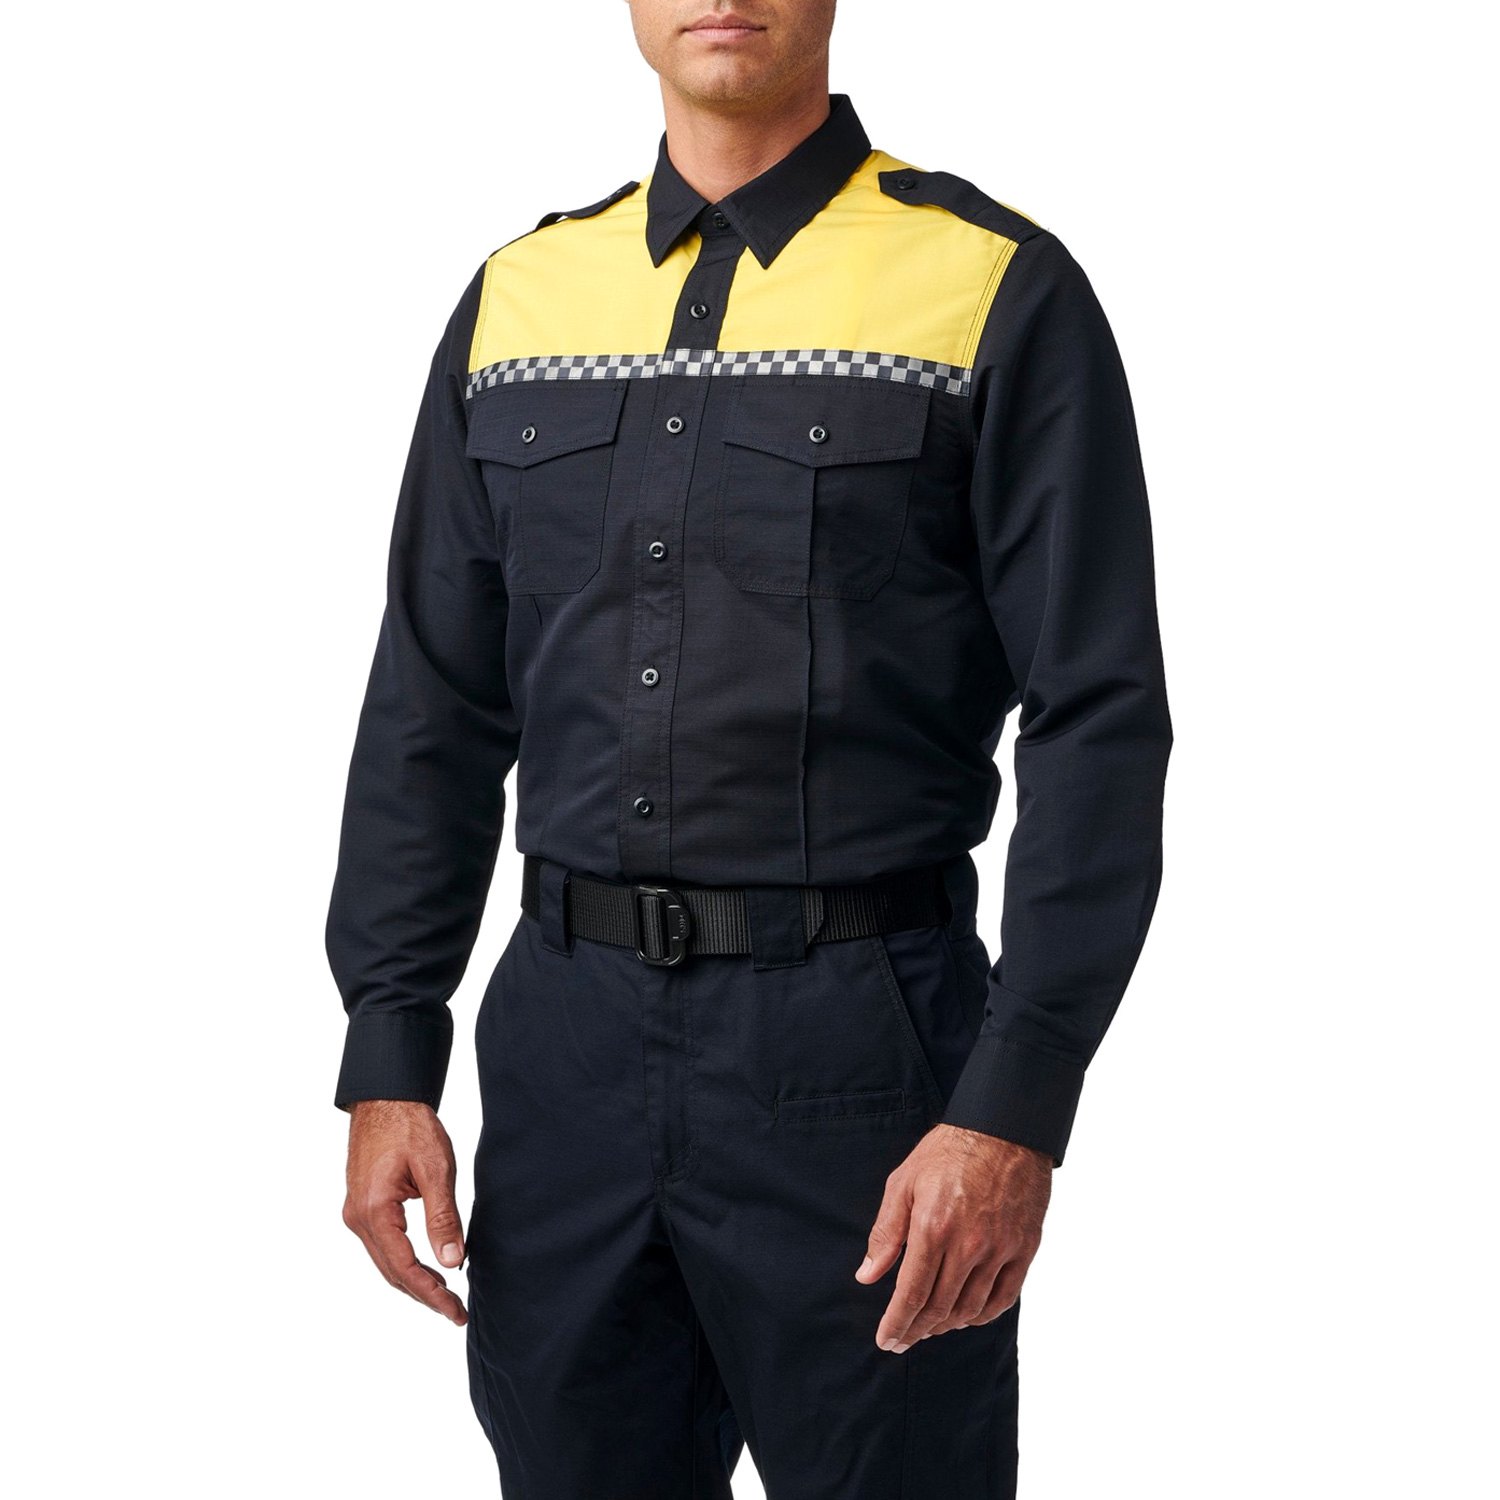 Customized Security Uniforms|Security Guard Uniform